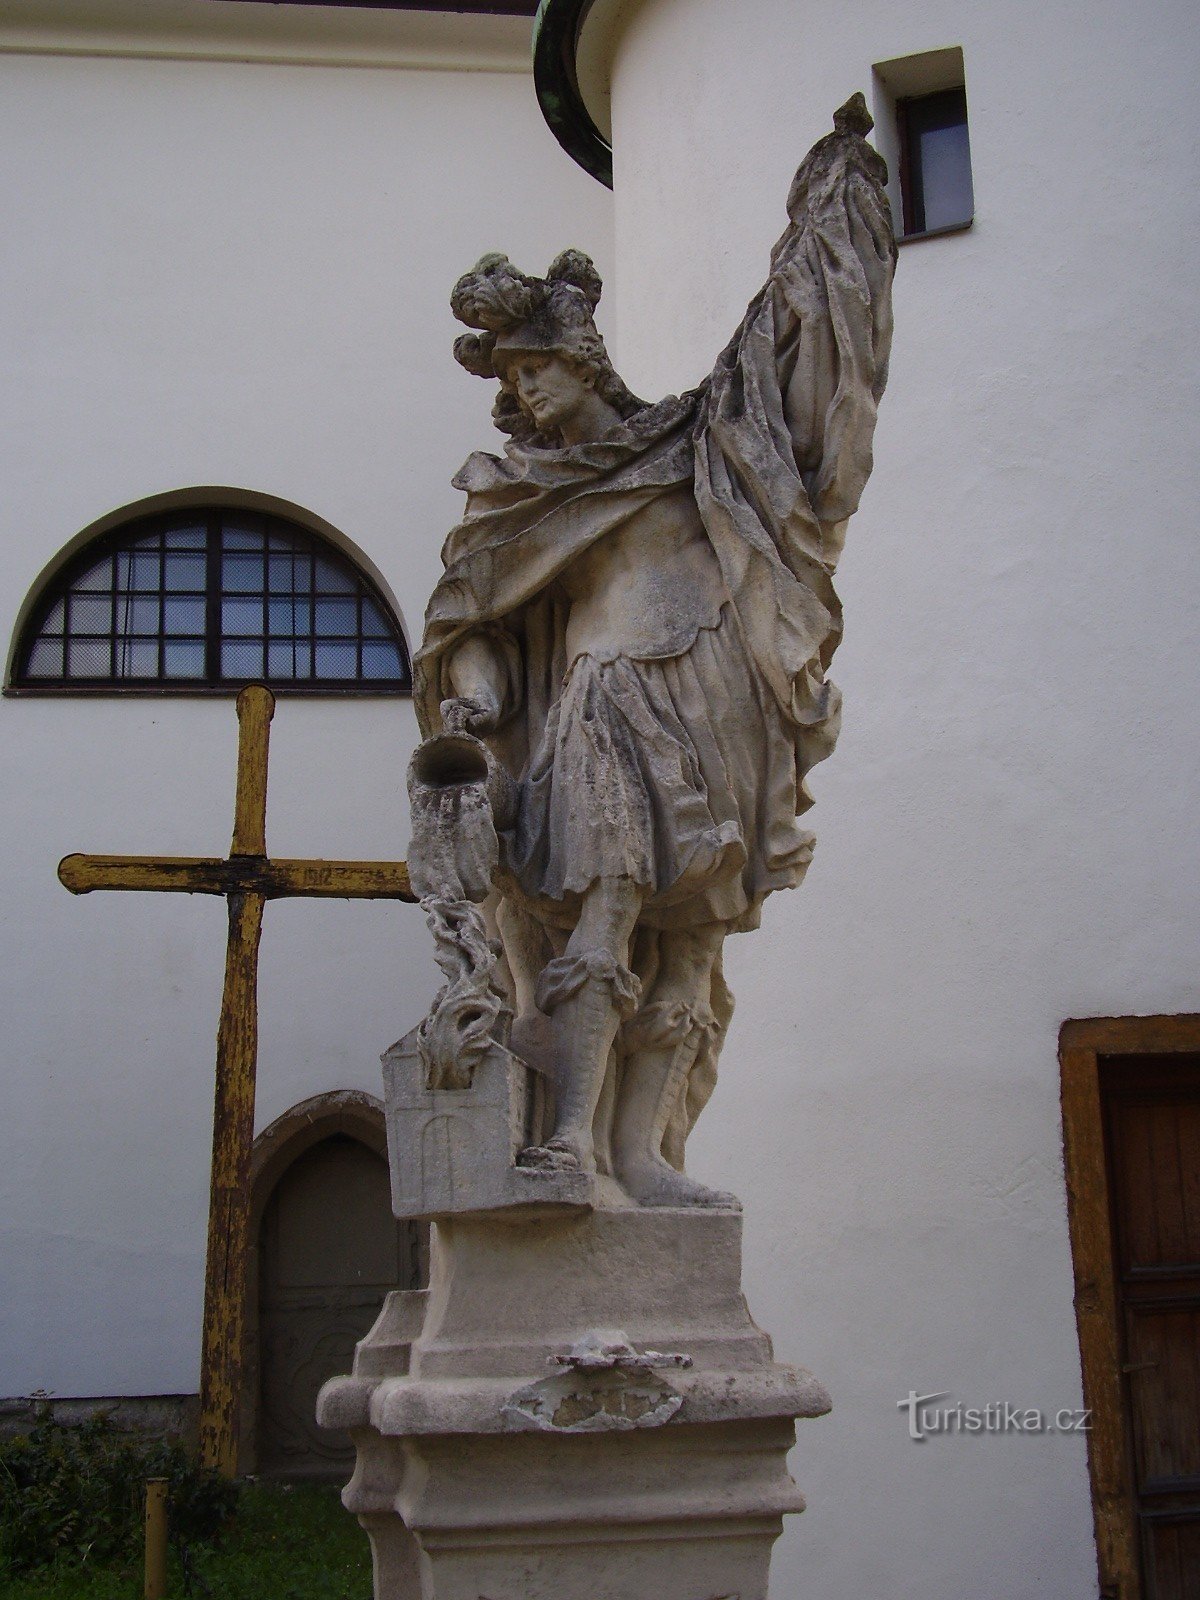 Statue de St. Florian à Rosice près de Brno